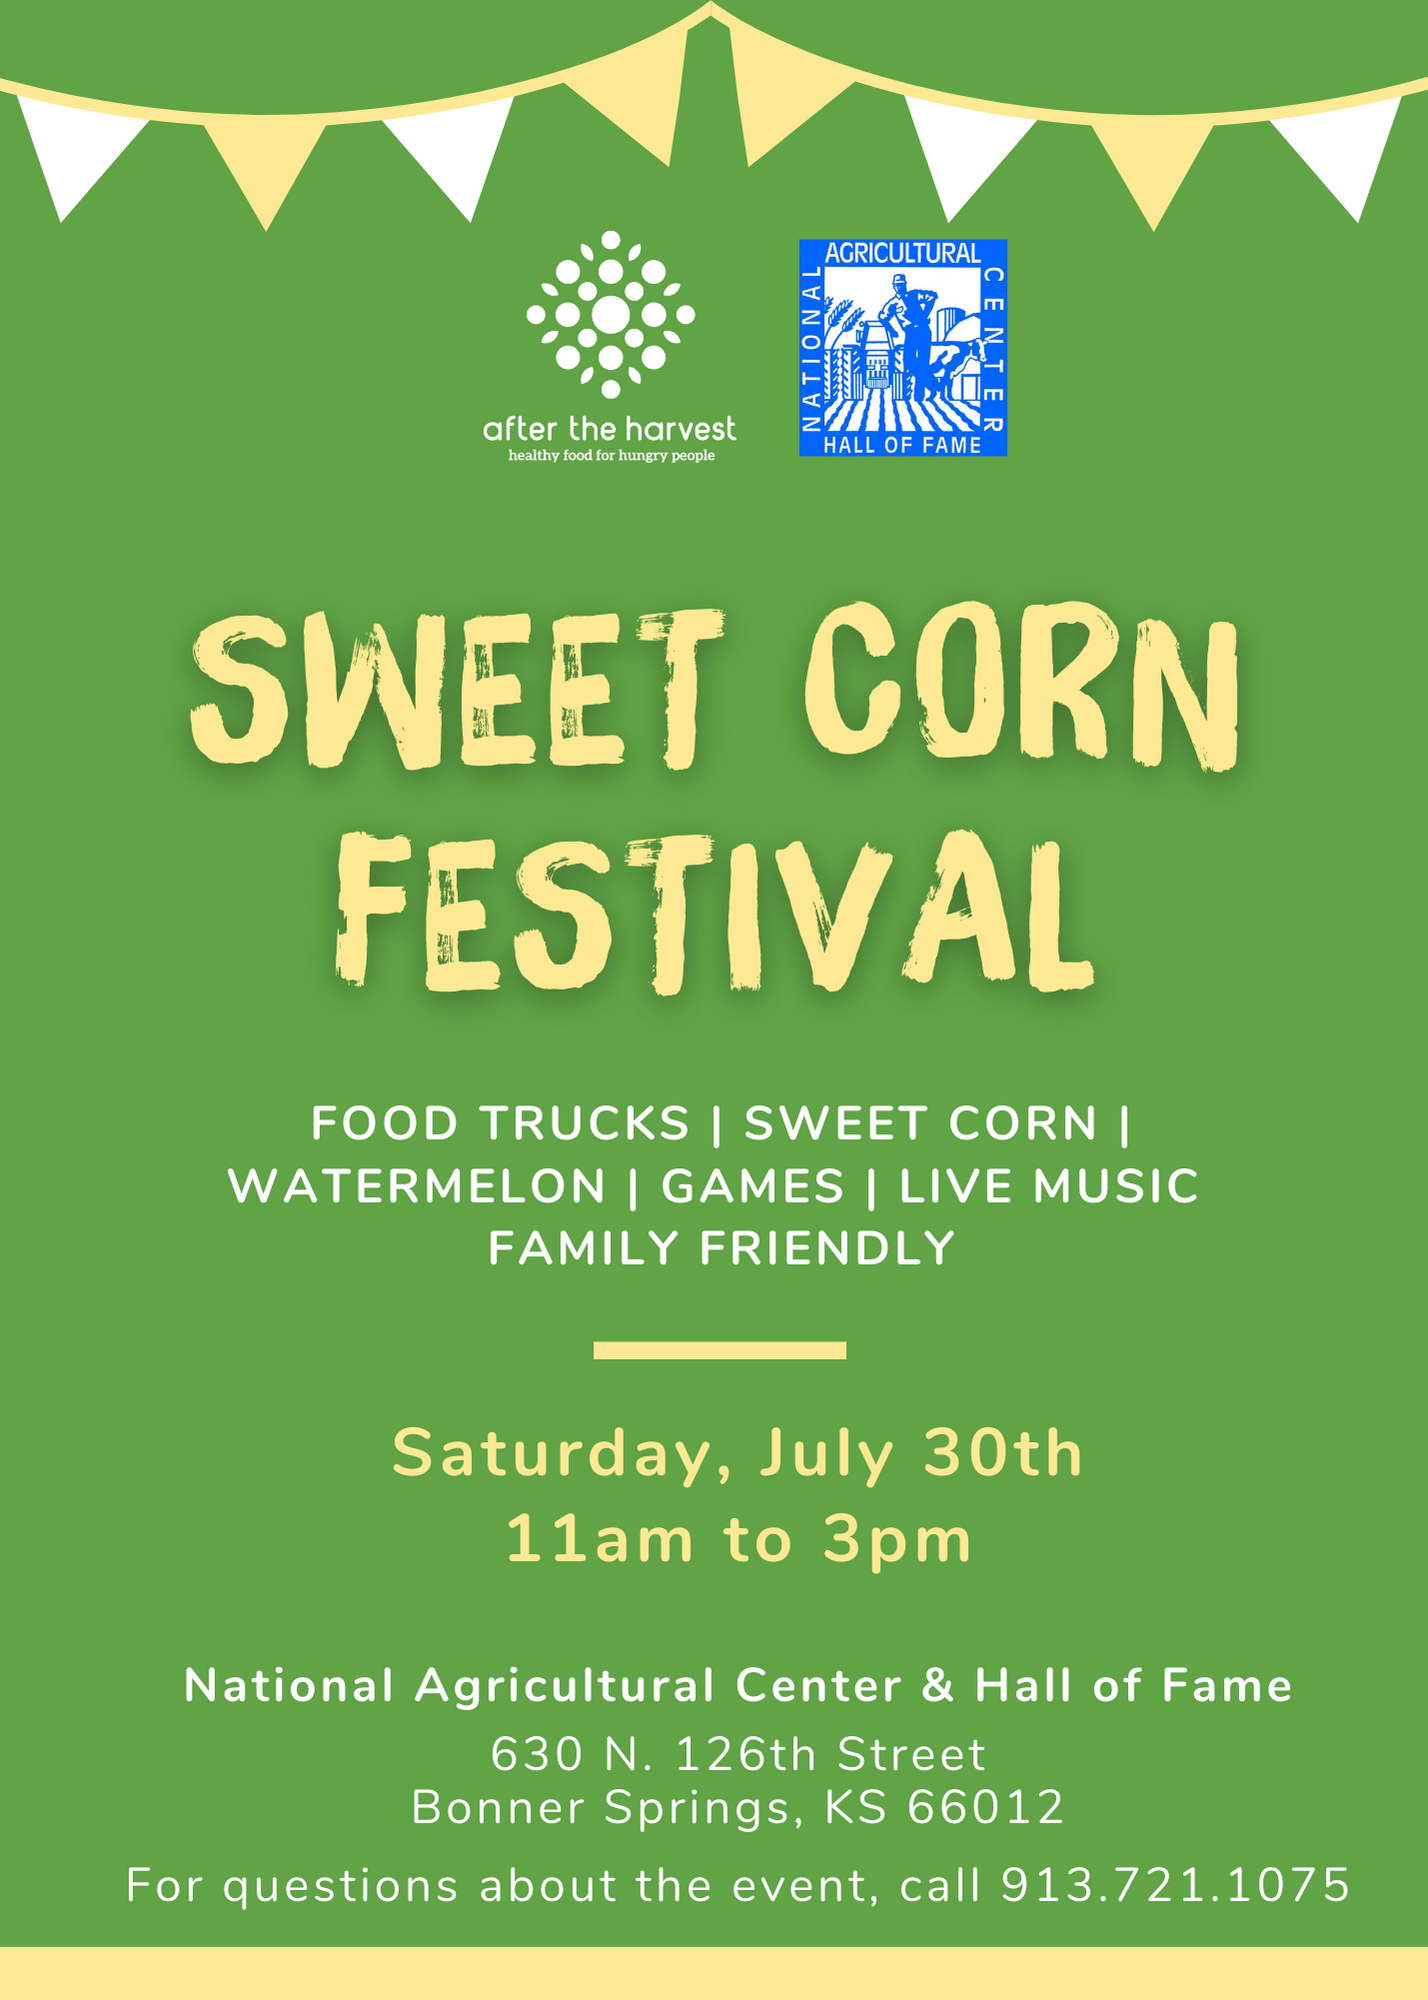 Sweet corn festival flyer